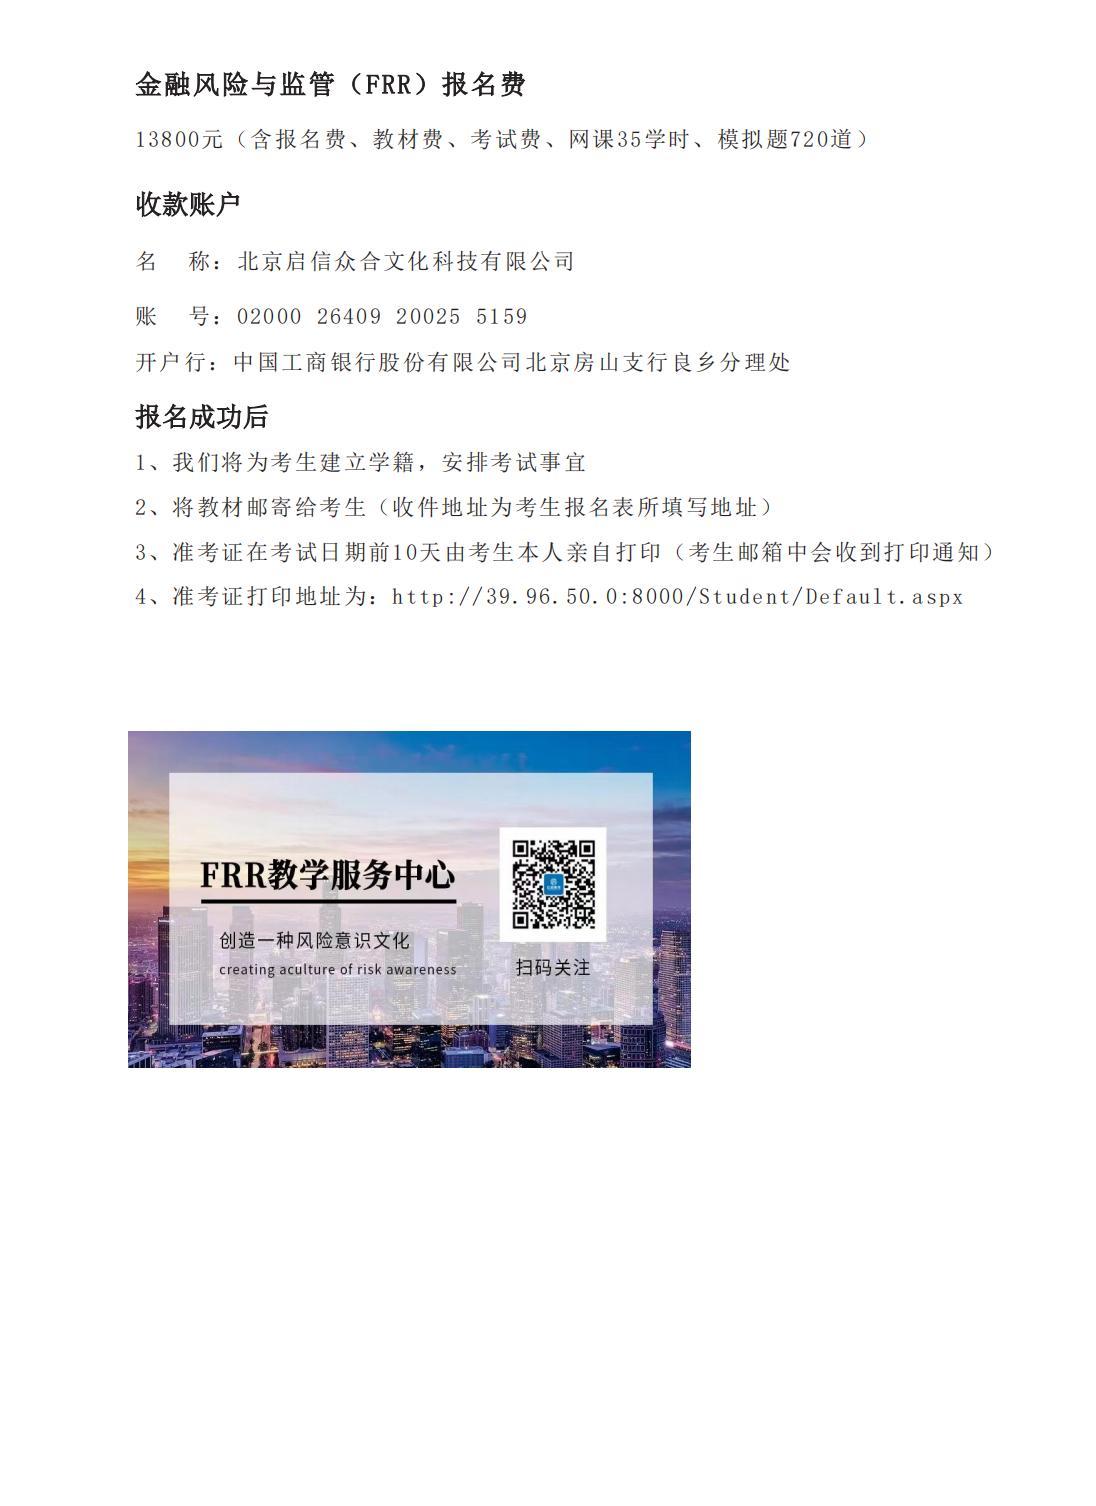 甘肃定西金融风险与监管证书FRR报名考试培训机构北京启信教育